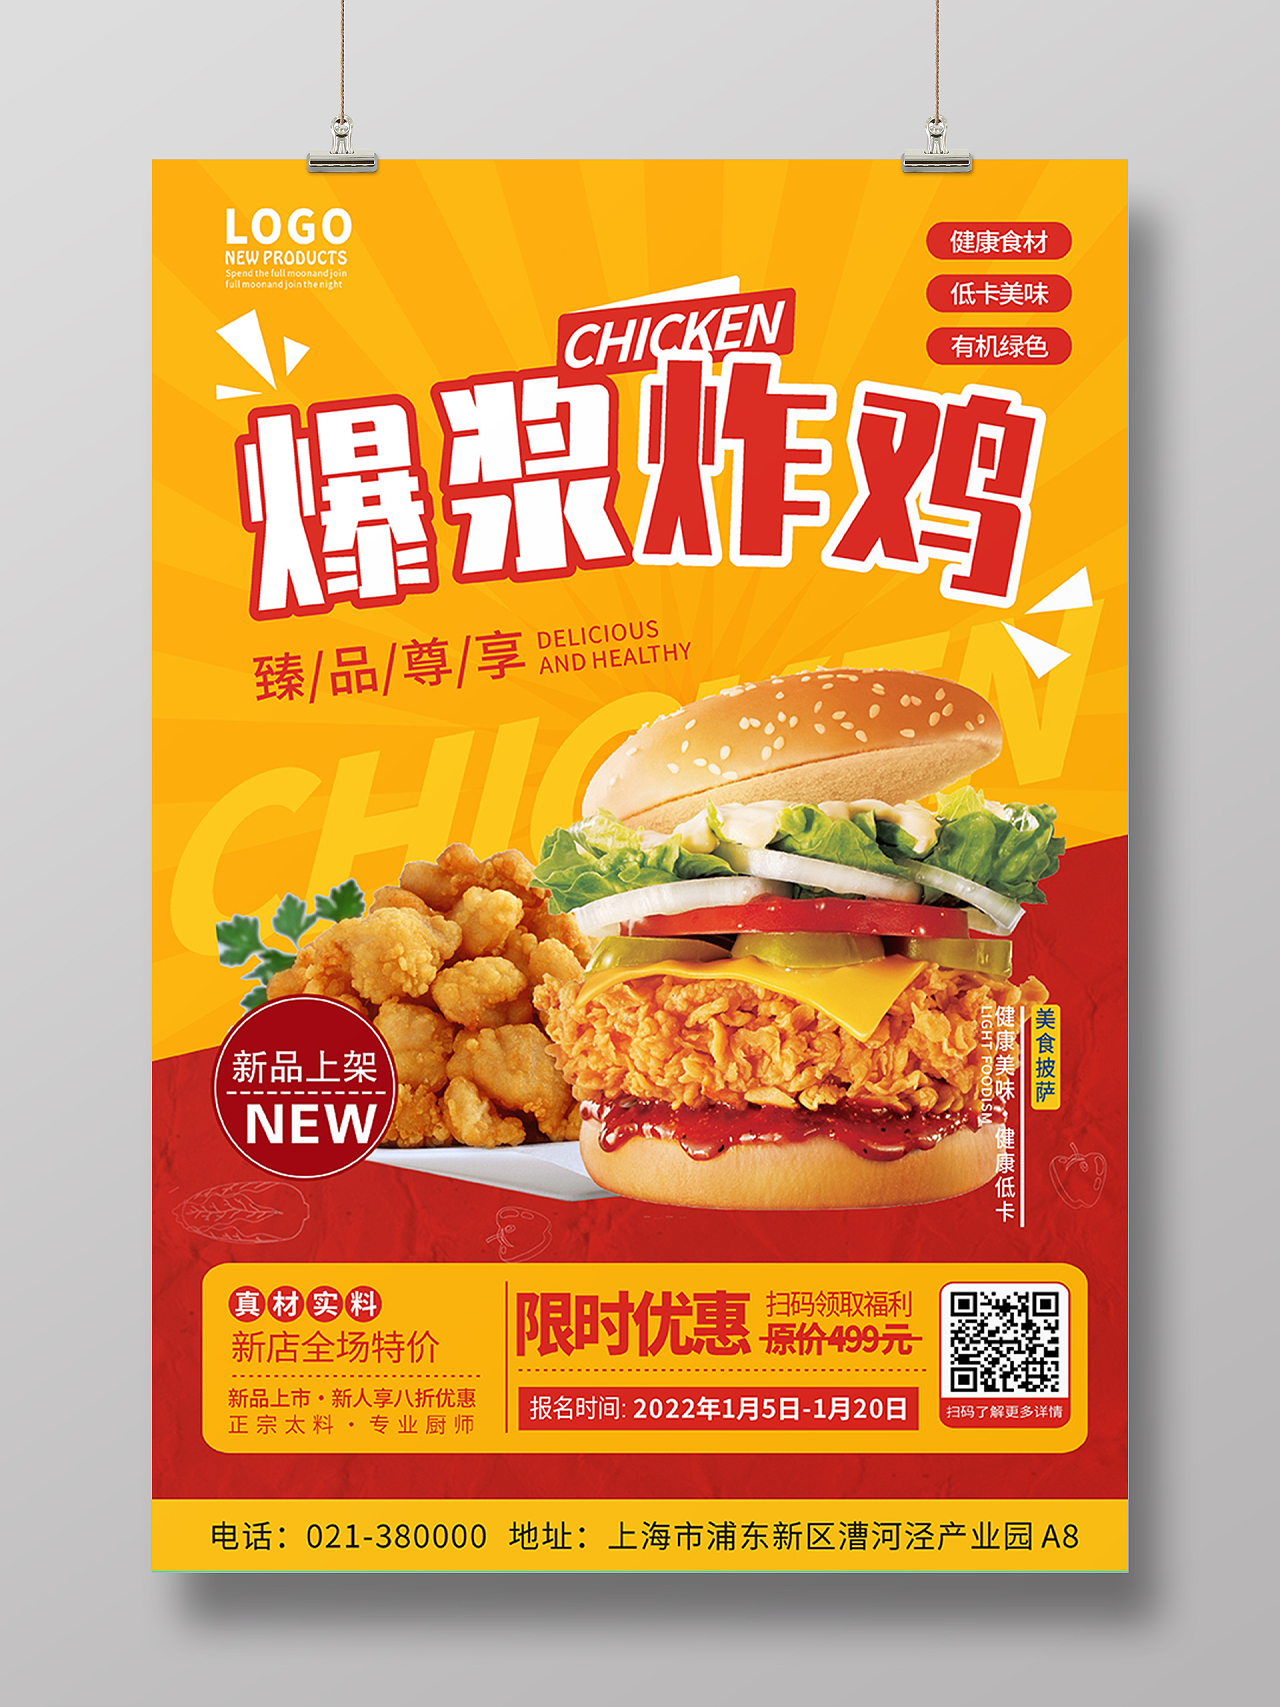 红黄色简约汉堡炸鸡美食海报背景美食模板